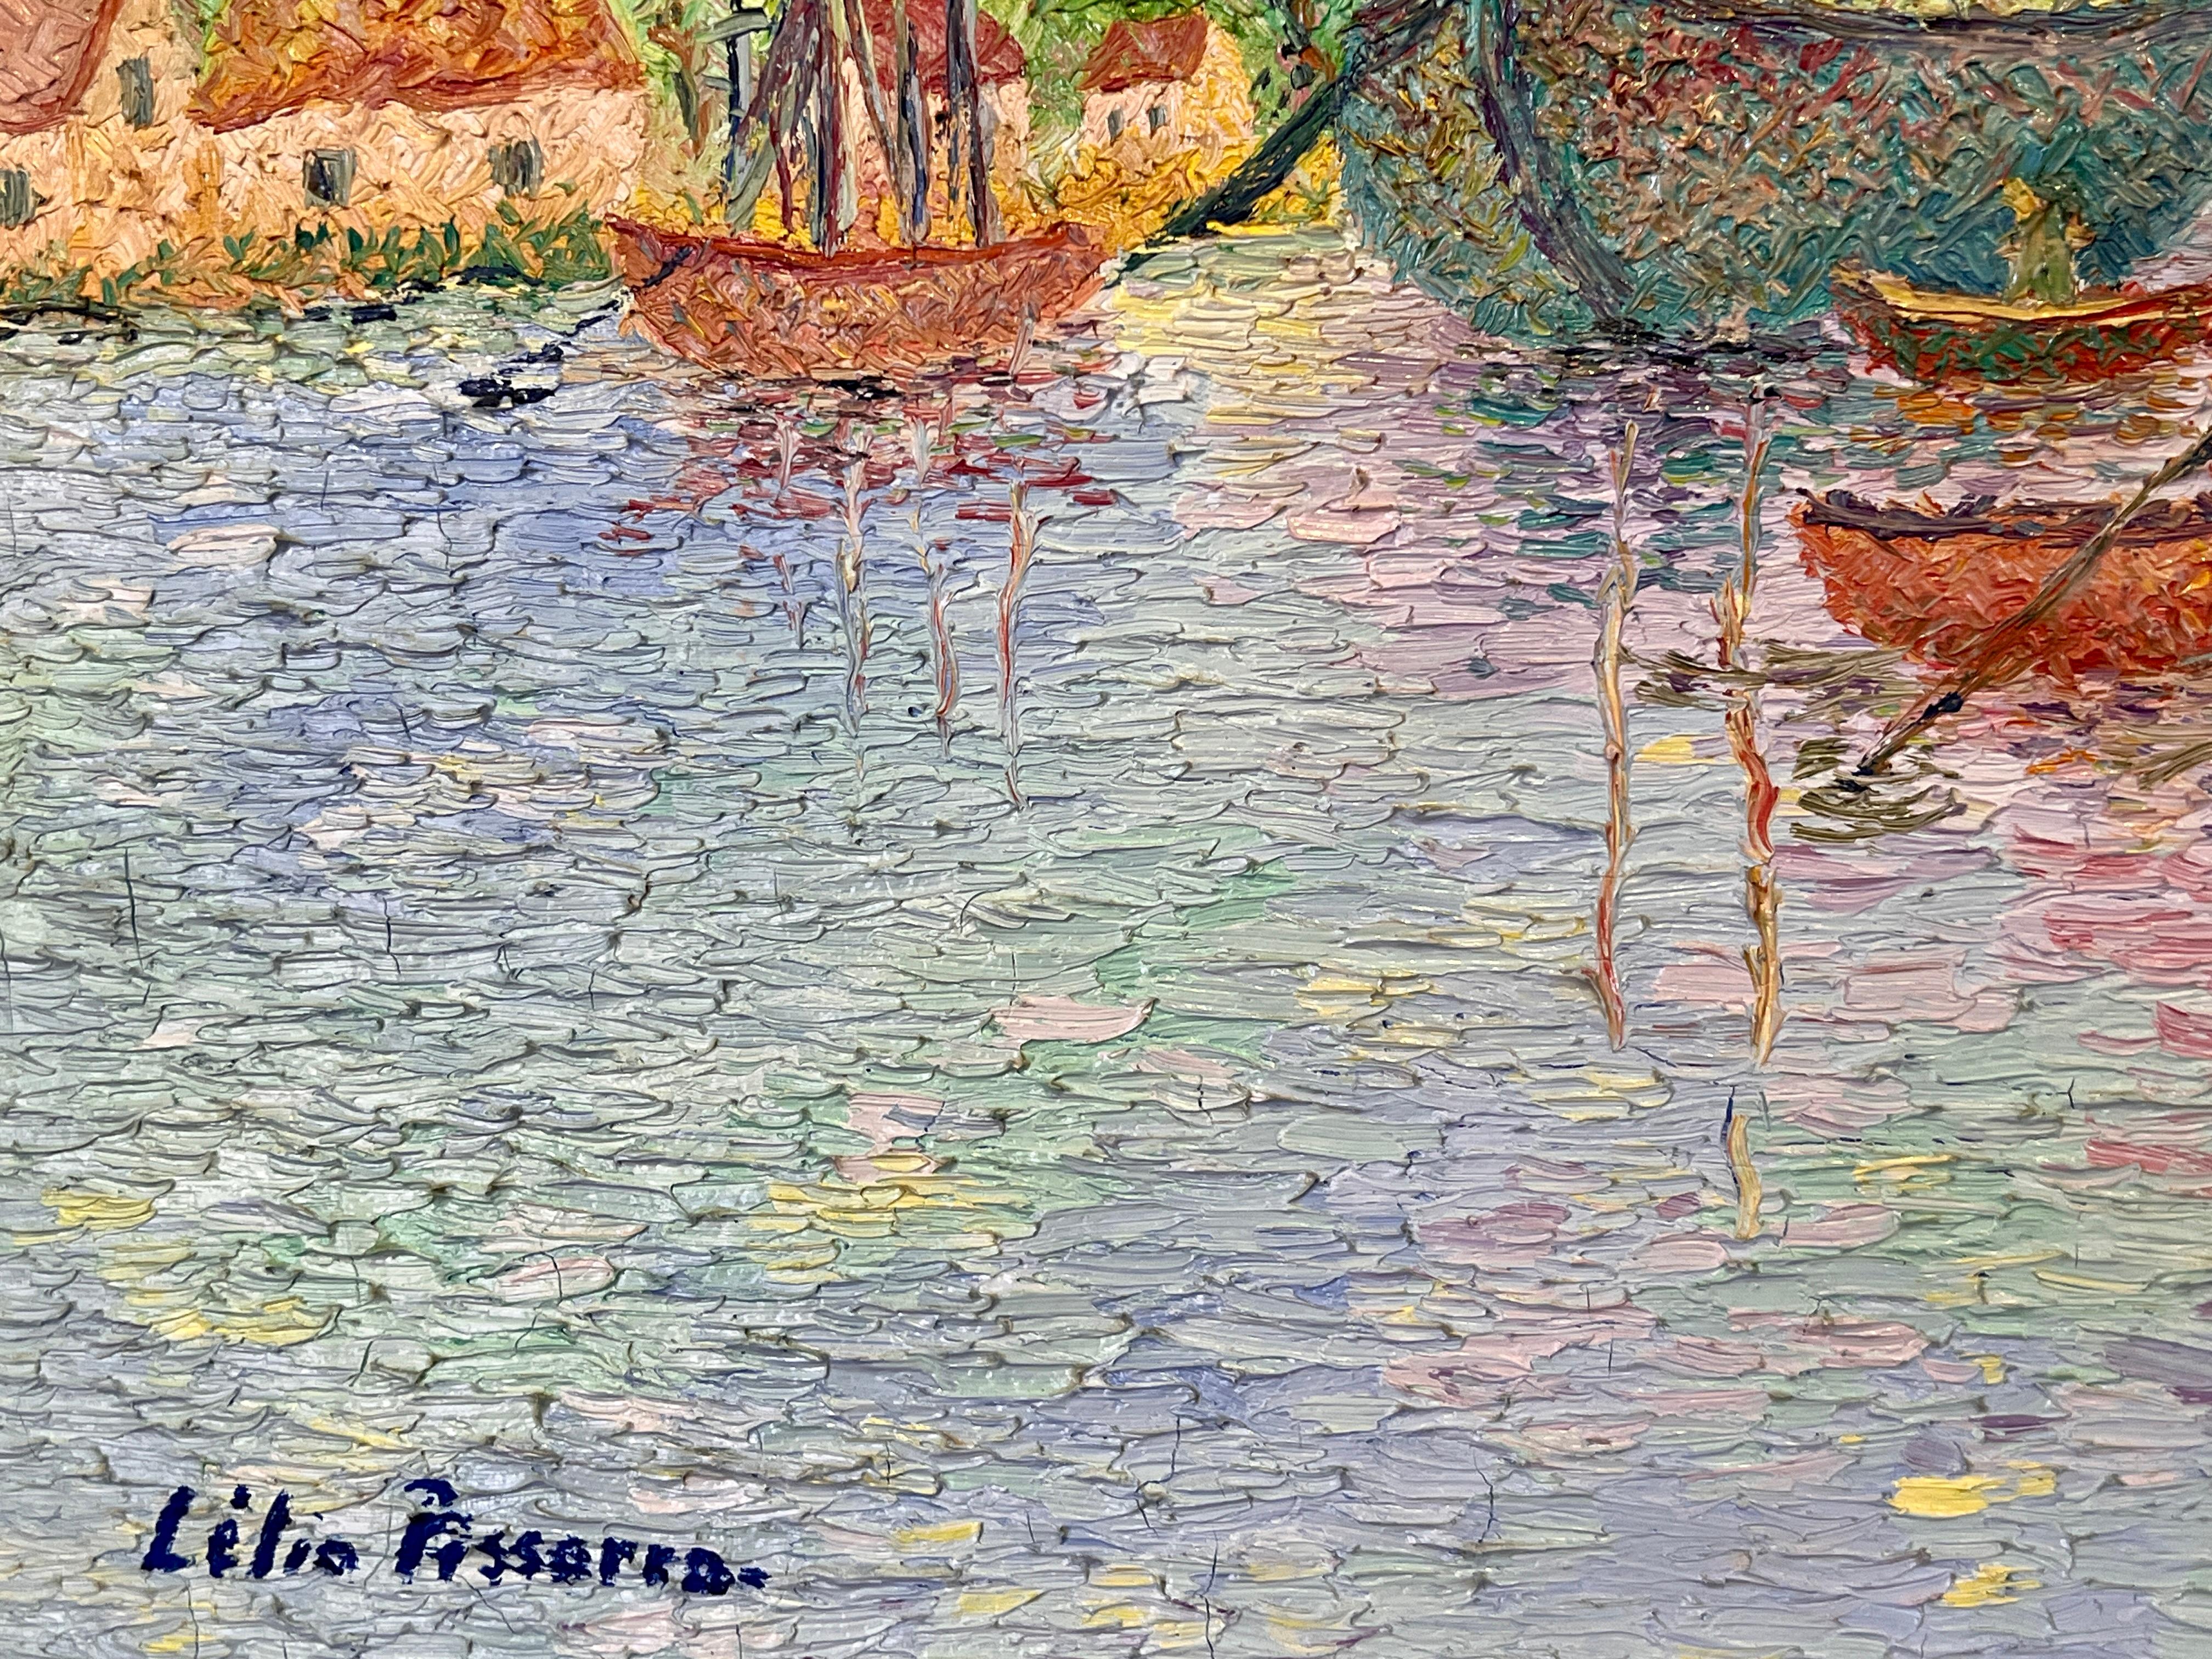 Le port de Taumeck en France est une exquise peinture à l'huile sur toile de Lelia Pissarro, réalisée dans le style impressionniste. L'œuvre d'art capture magnifiquement le port pittoresque de Taumeck en France, présentant une délicieuse combinaison